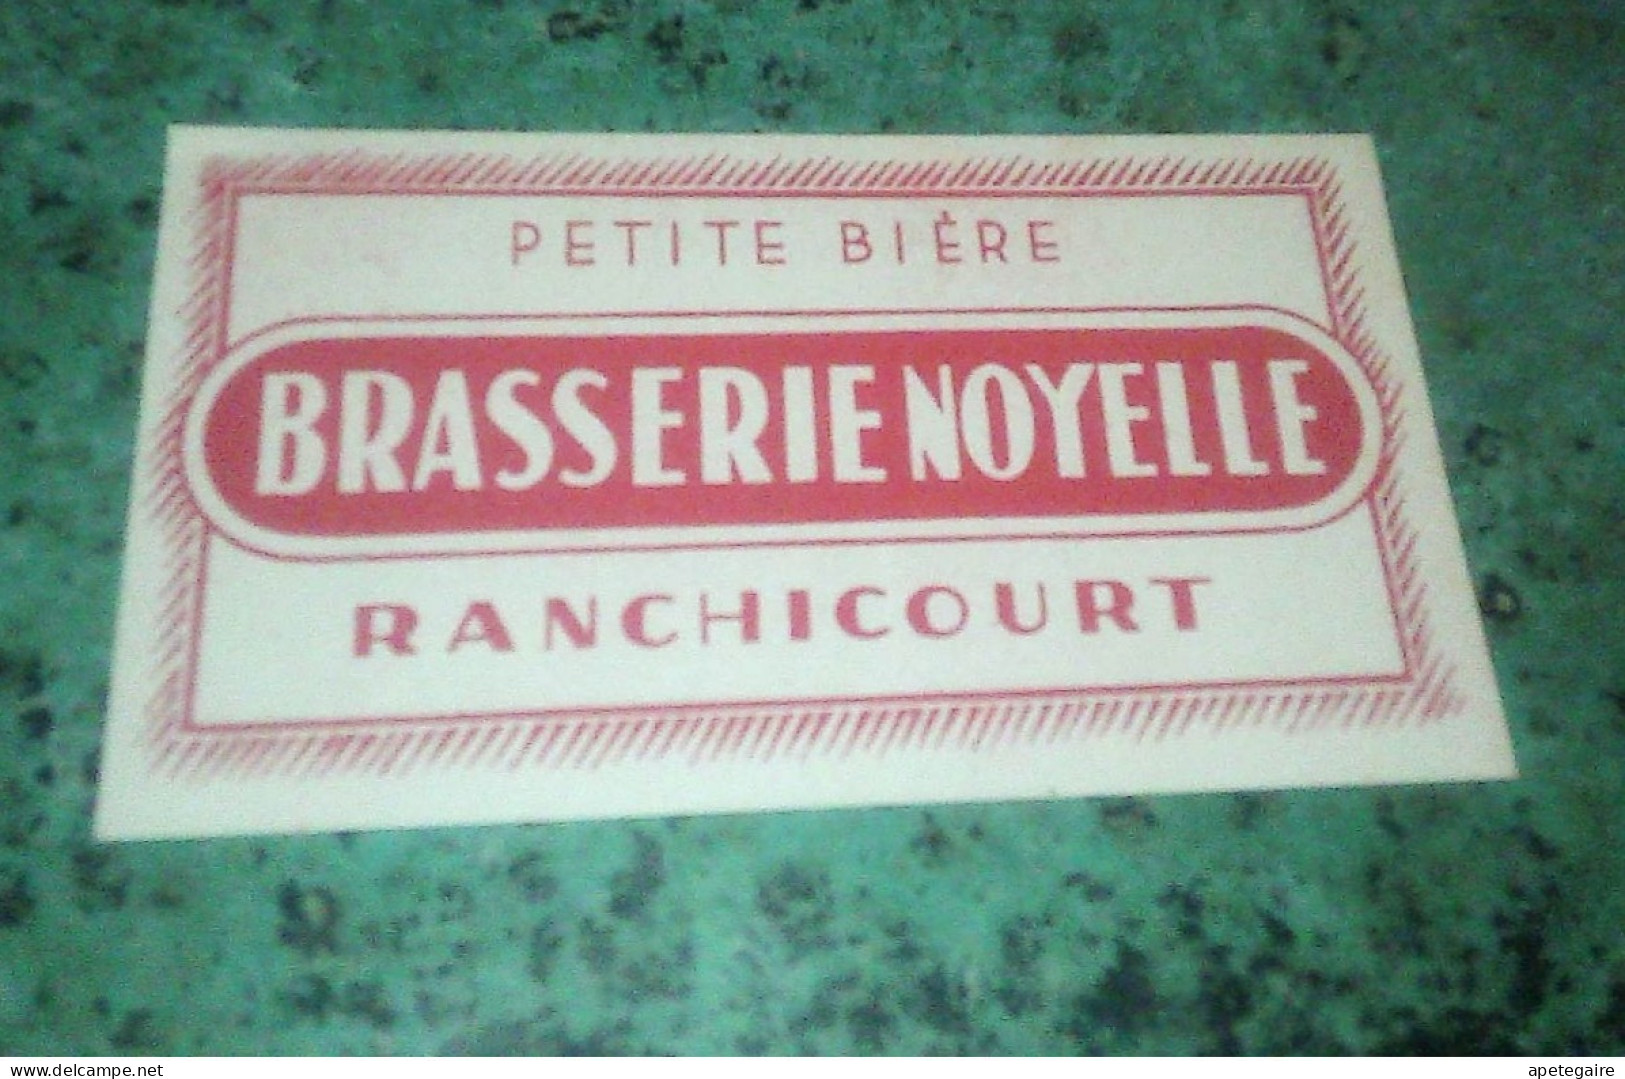 Ranchicourt  Brasserie  Noyelle.  Ancienne étiquette De Bière  Petite Bière - Beer